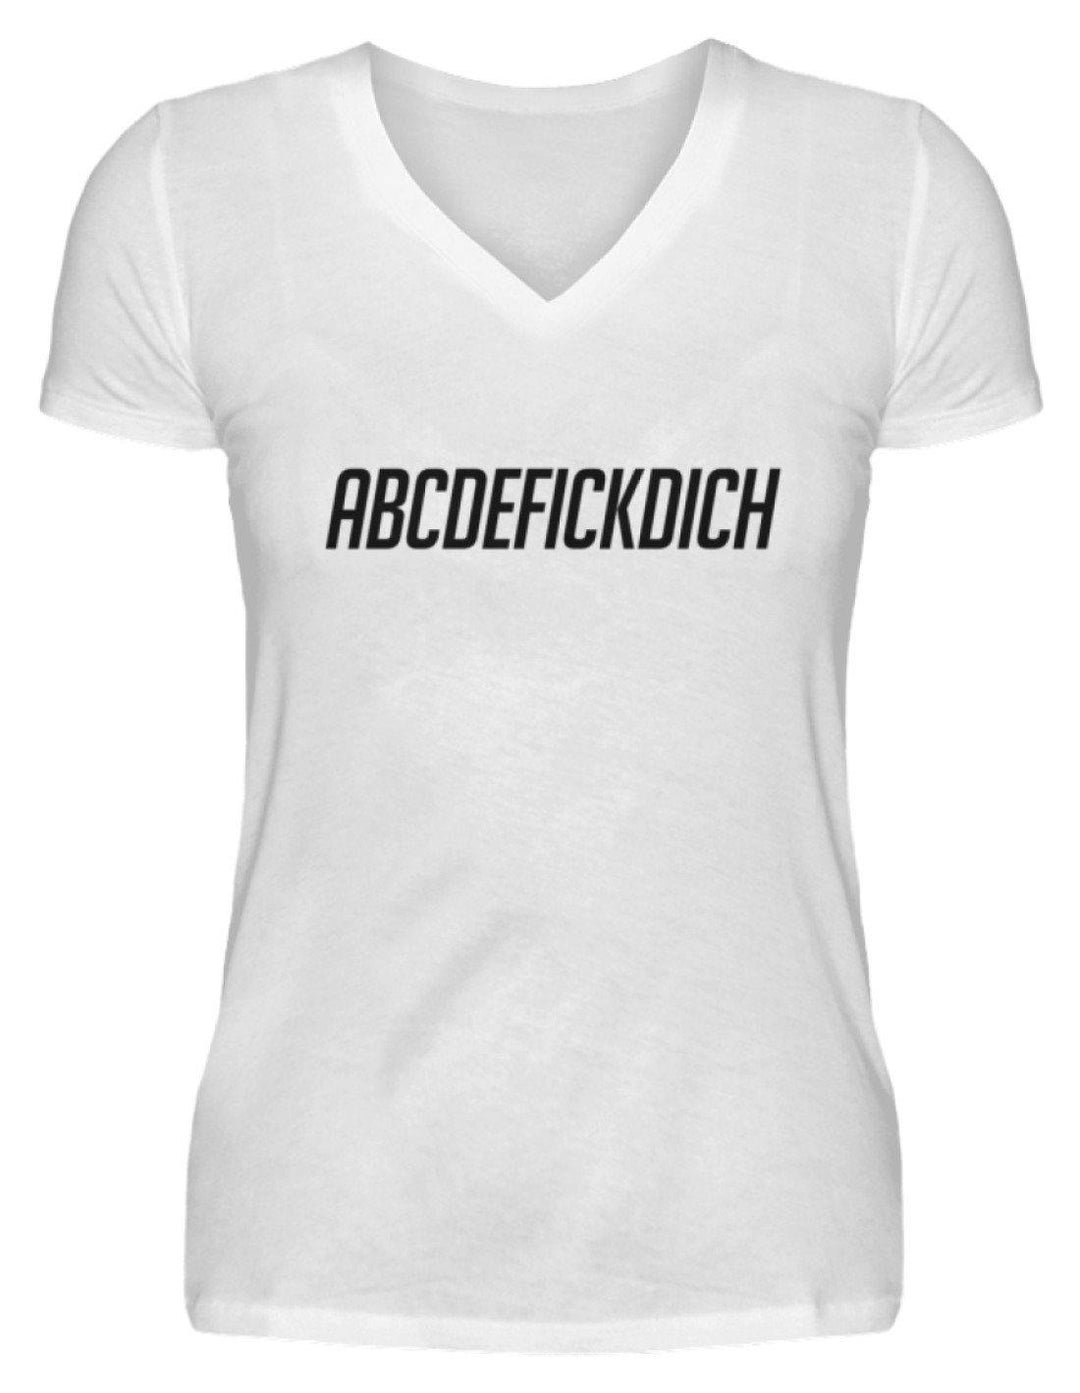 ABCDEF......... Words on Shirts  - V-Neck Damenshirt - Words on Shirts Sag es mit dem Mittelfinger Shirts Hoodies Sweatshirt Taschen Gymsack Spruch Sprüche Statement